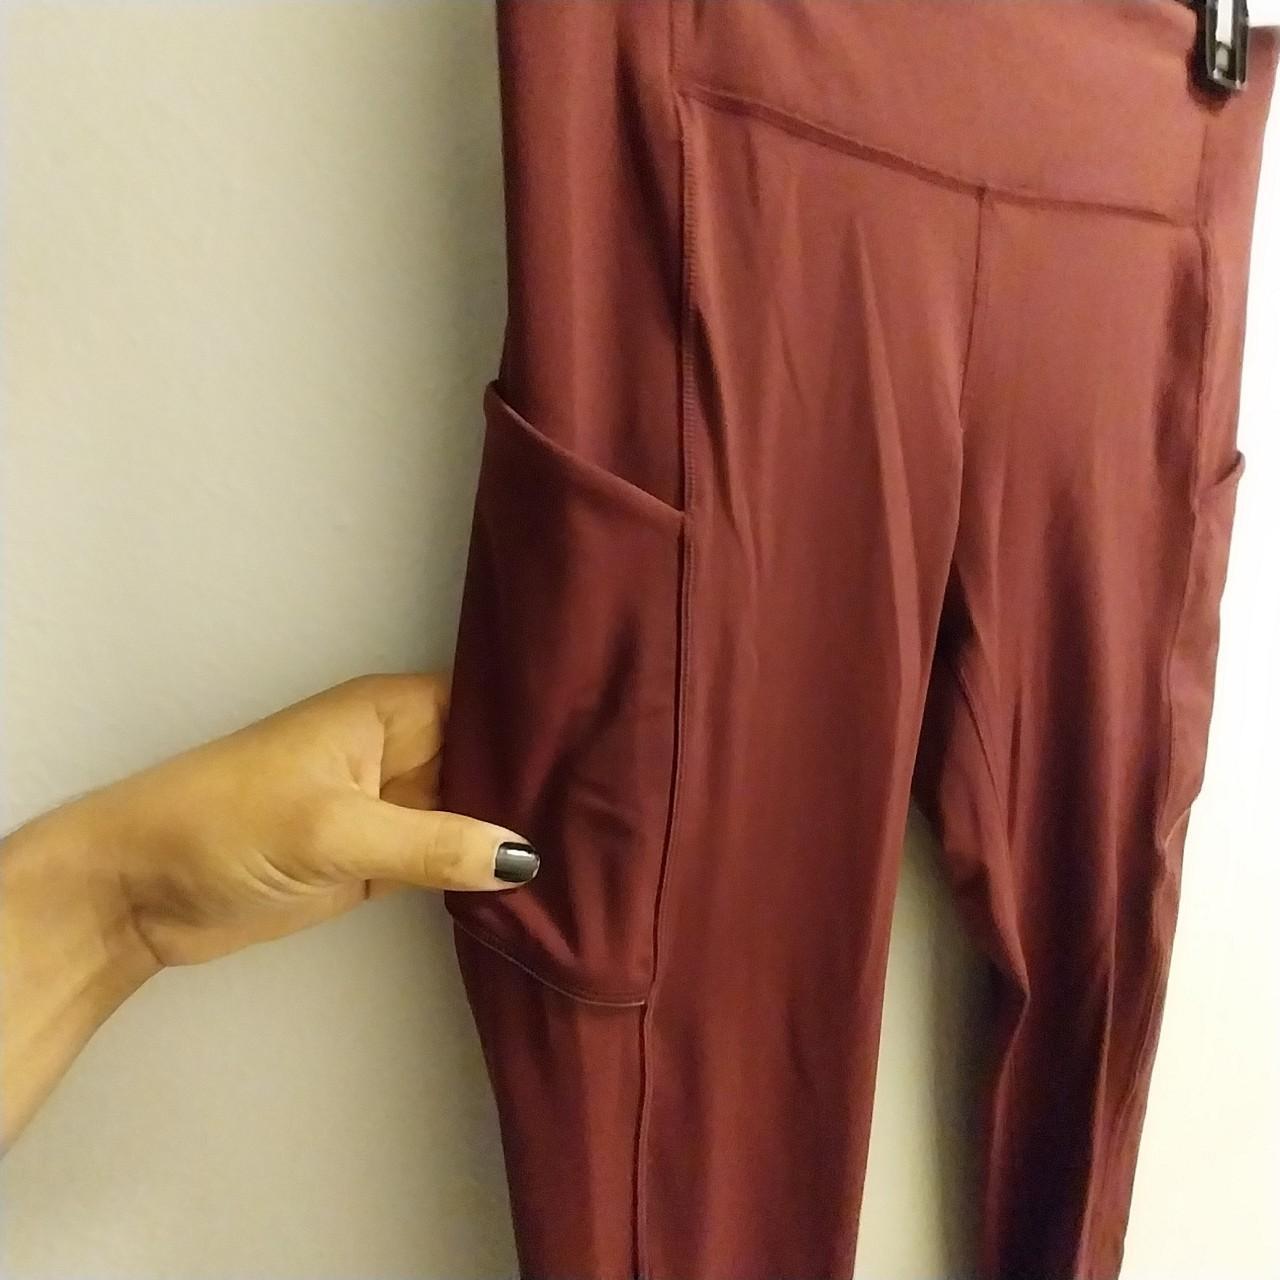 Lulu lemon Speed Up Tight burgundy leggings… these - Depop